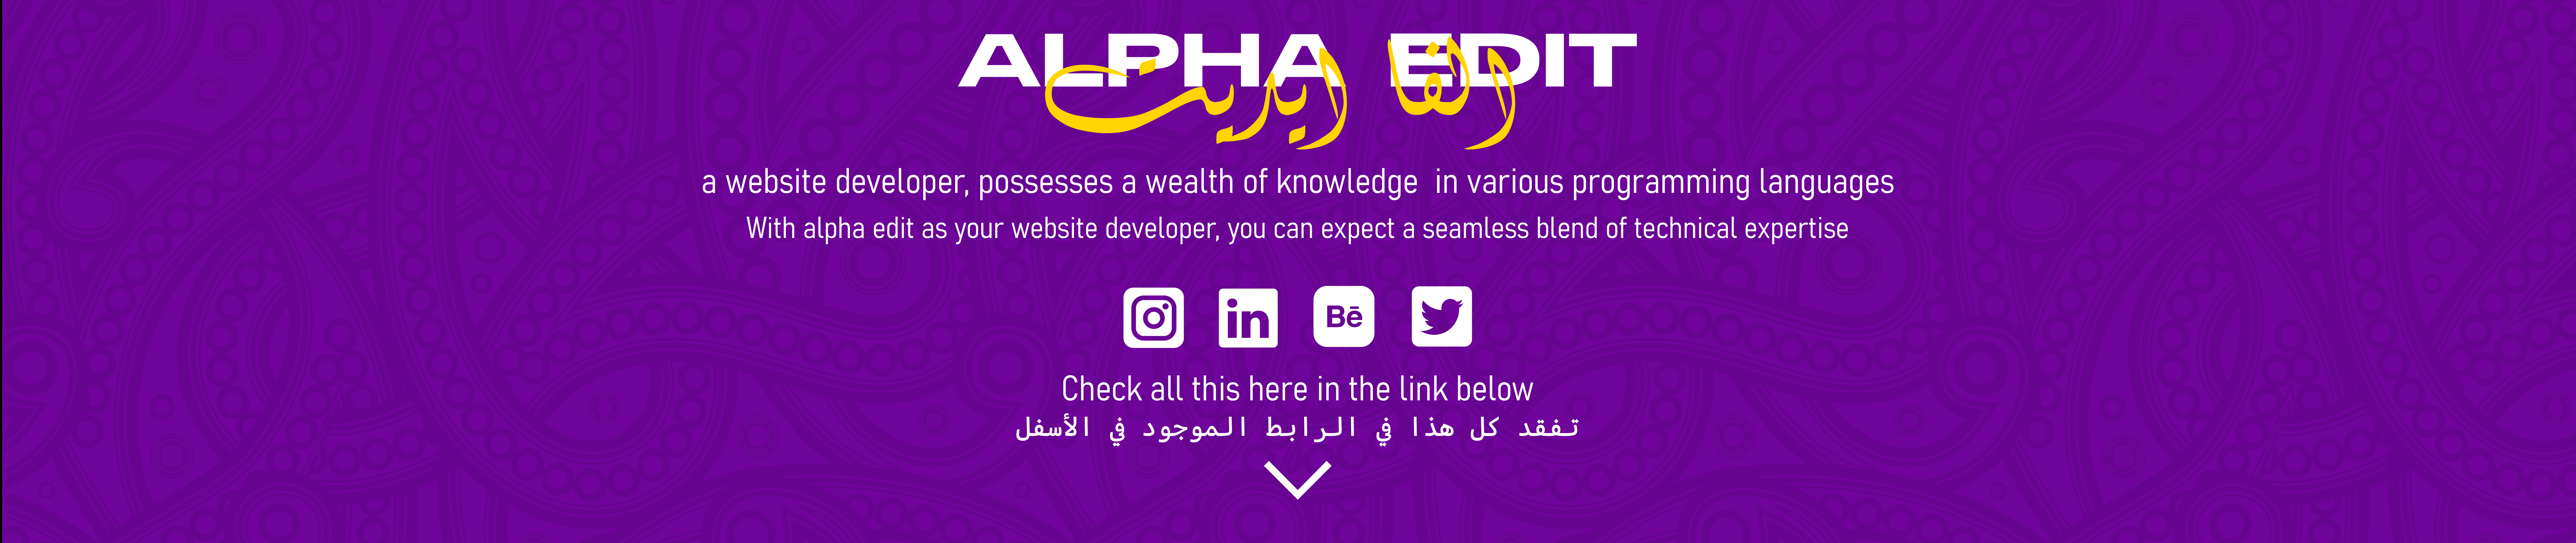 Banner de perfil de ALPHA EDIT